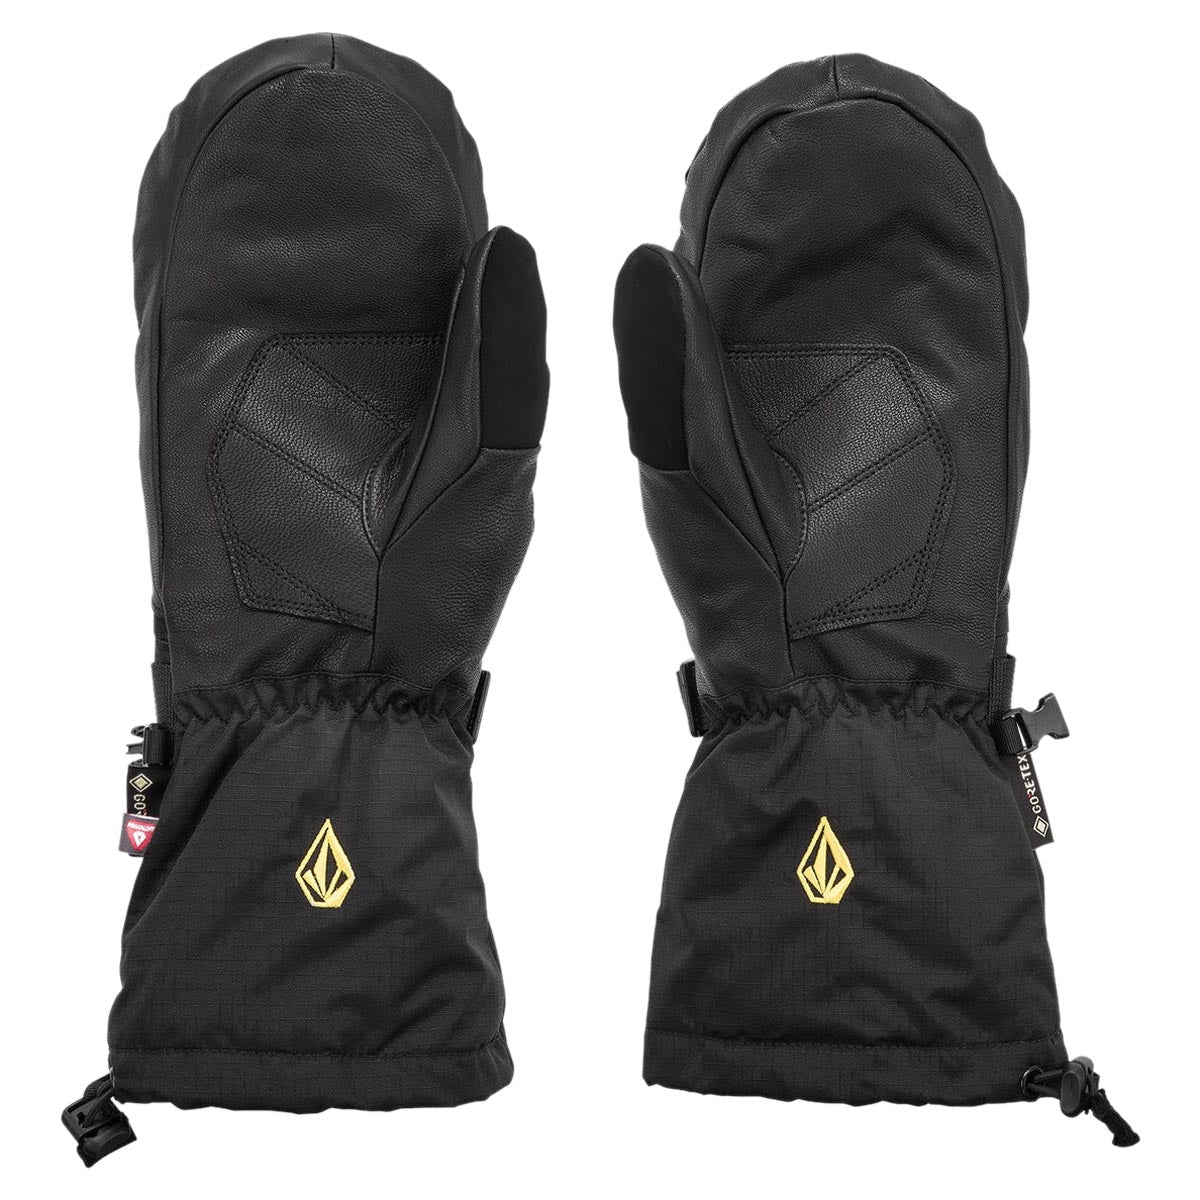 Volcom 91 Gore-tex Mitt Snowboard Gloves - Black image 2